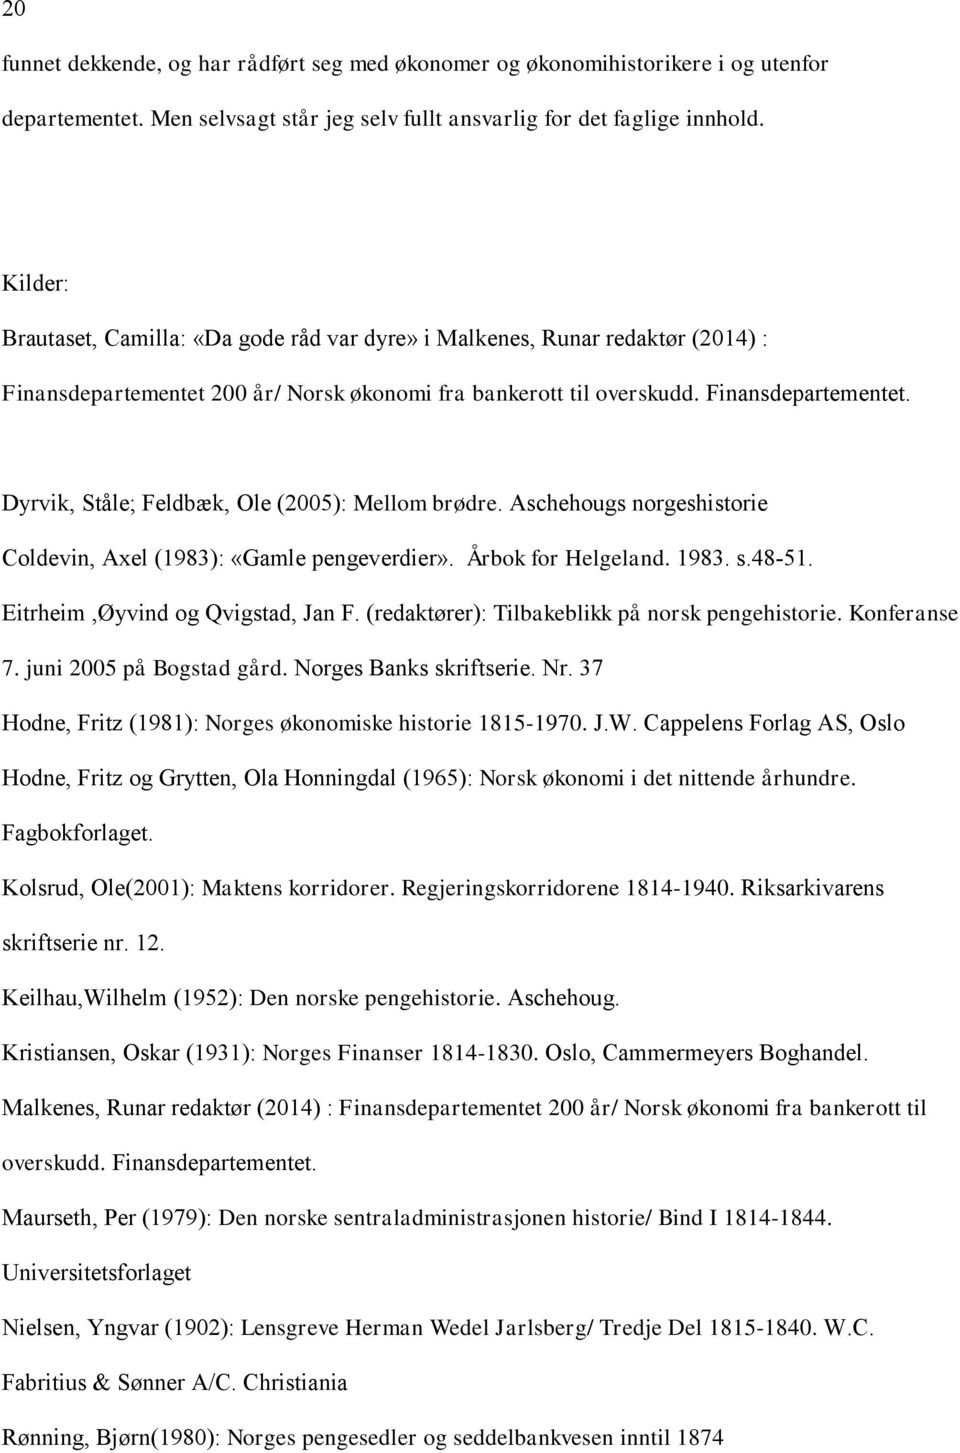 Aschehougs norgeshistorie Coldevin, Axel (1983): «Gamle pengeverdier». Årbok for Helgeland. 1983. s.48-51. Eitrheim,Øyvind og Qvigstad, Jan F. (redaktører): Tilbakeblikk på norsk pengehistorie.